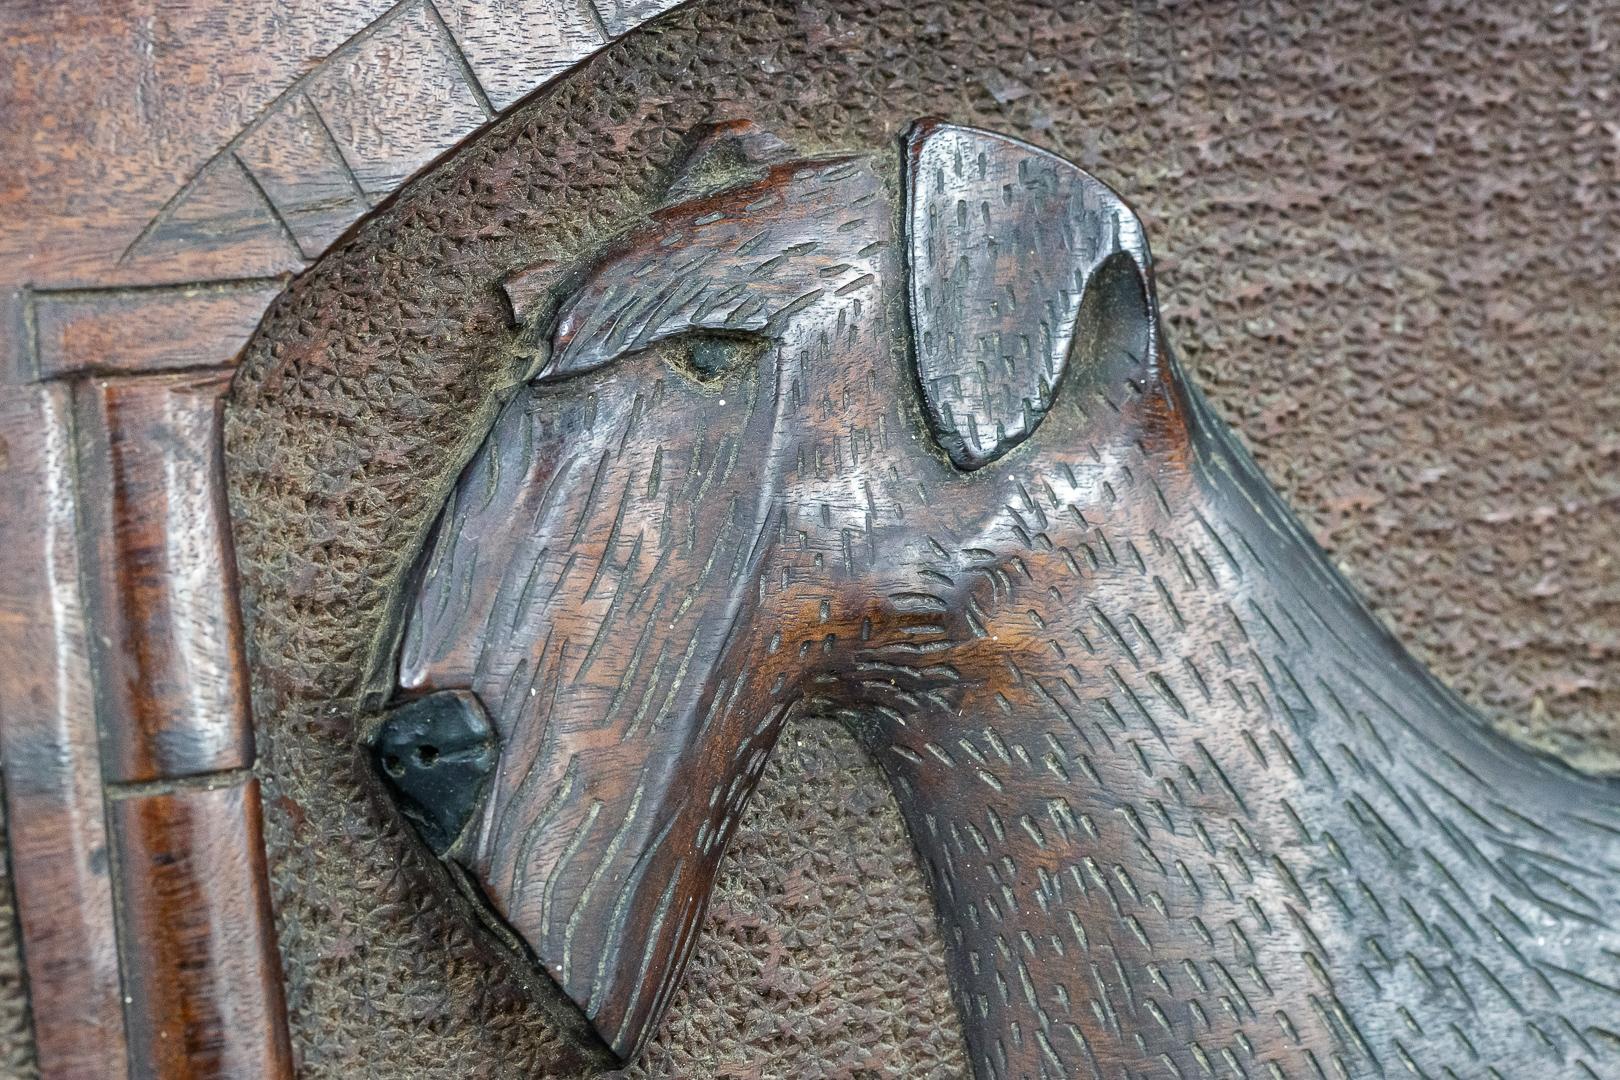 Wunderschöne reliefgeschnitzte Airedale-Terrier-Plakette aus dem 20. Jahrhundert, links die Siegerrosette und rechts die Siegertrophäe. Der Siegerhund steht stolz in der Mitte, aufwendige Details im gesamten Bild. England 20. Jahrhundert, auf der